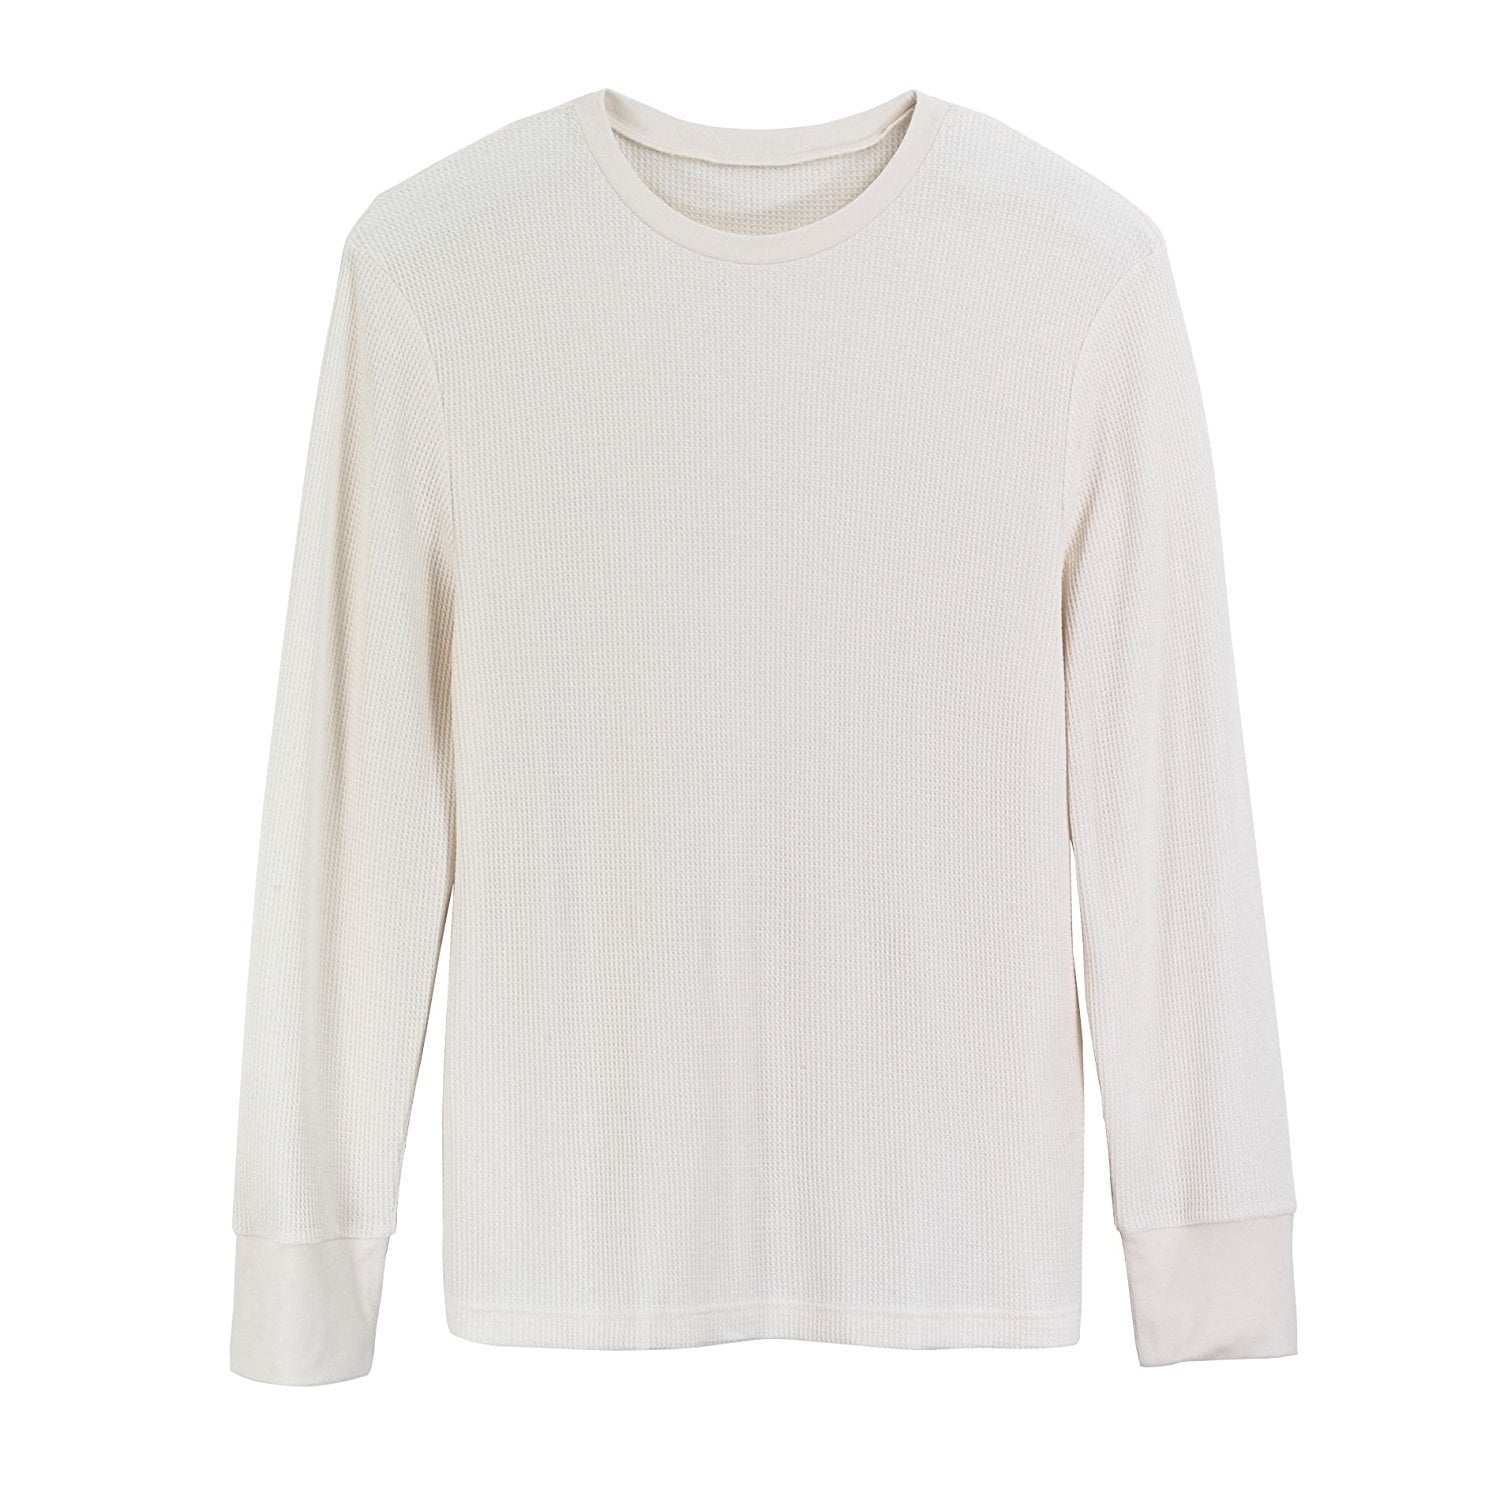 mens white thermal shirt| Enjoy free shipping